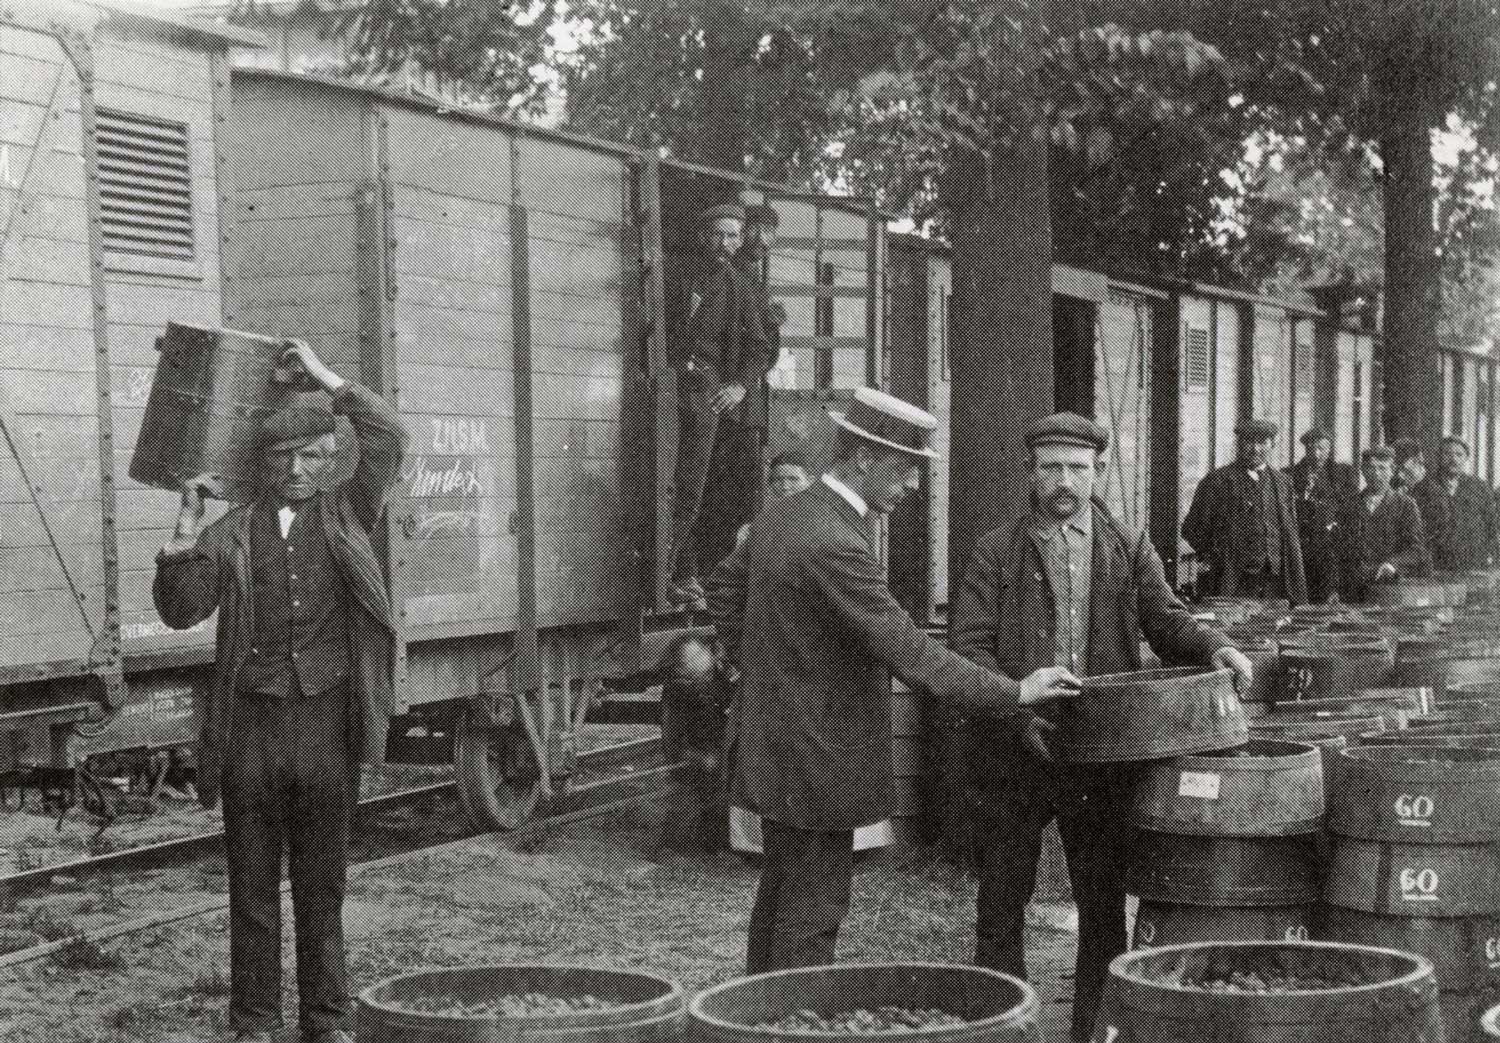 Een goederentram van de ZNSM bij De Wissel in Zundert die geladen wordt met frambozen, 1910 (bron: Stadsarchief Breda)